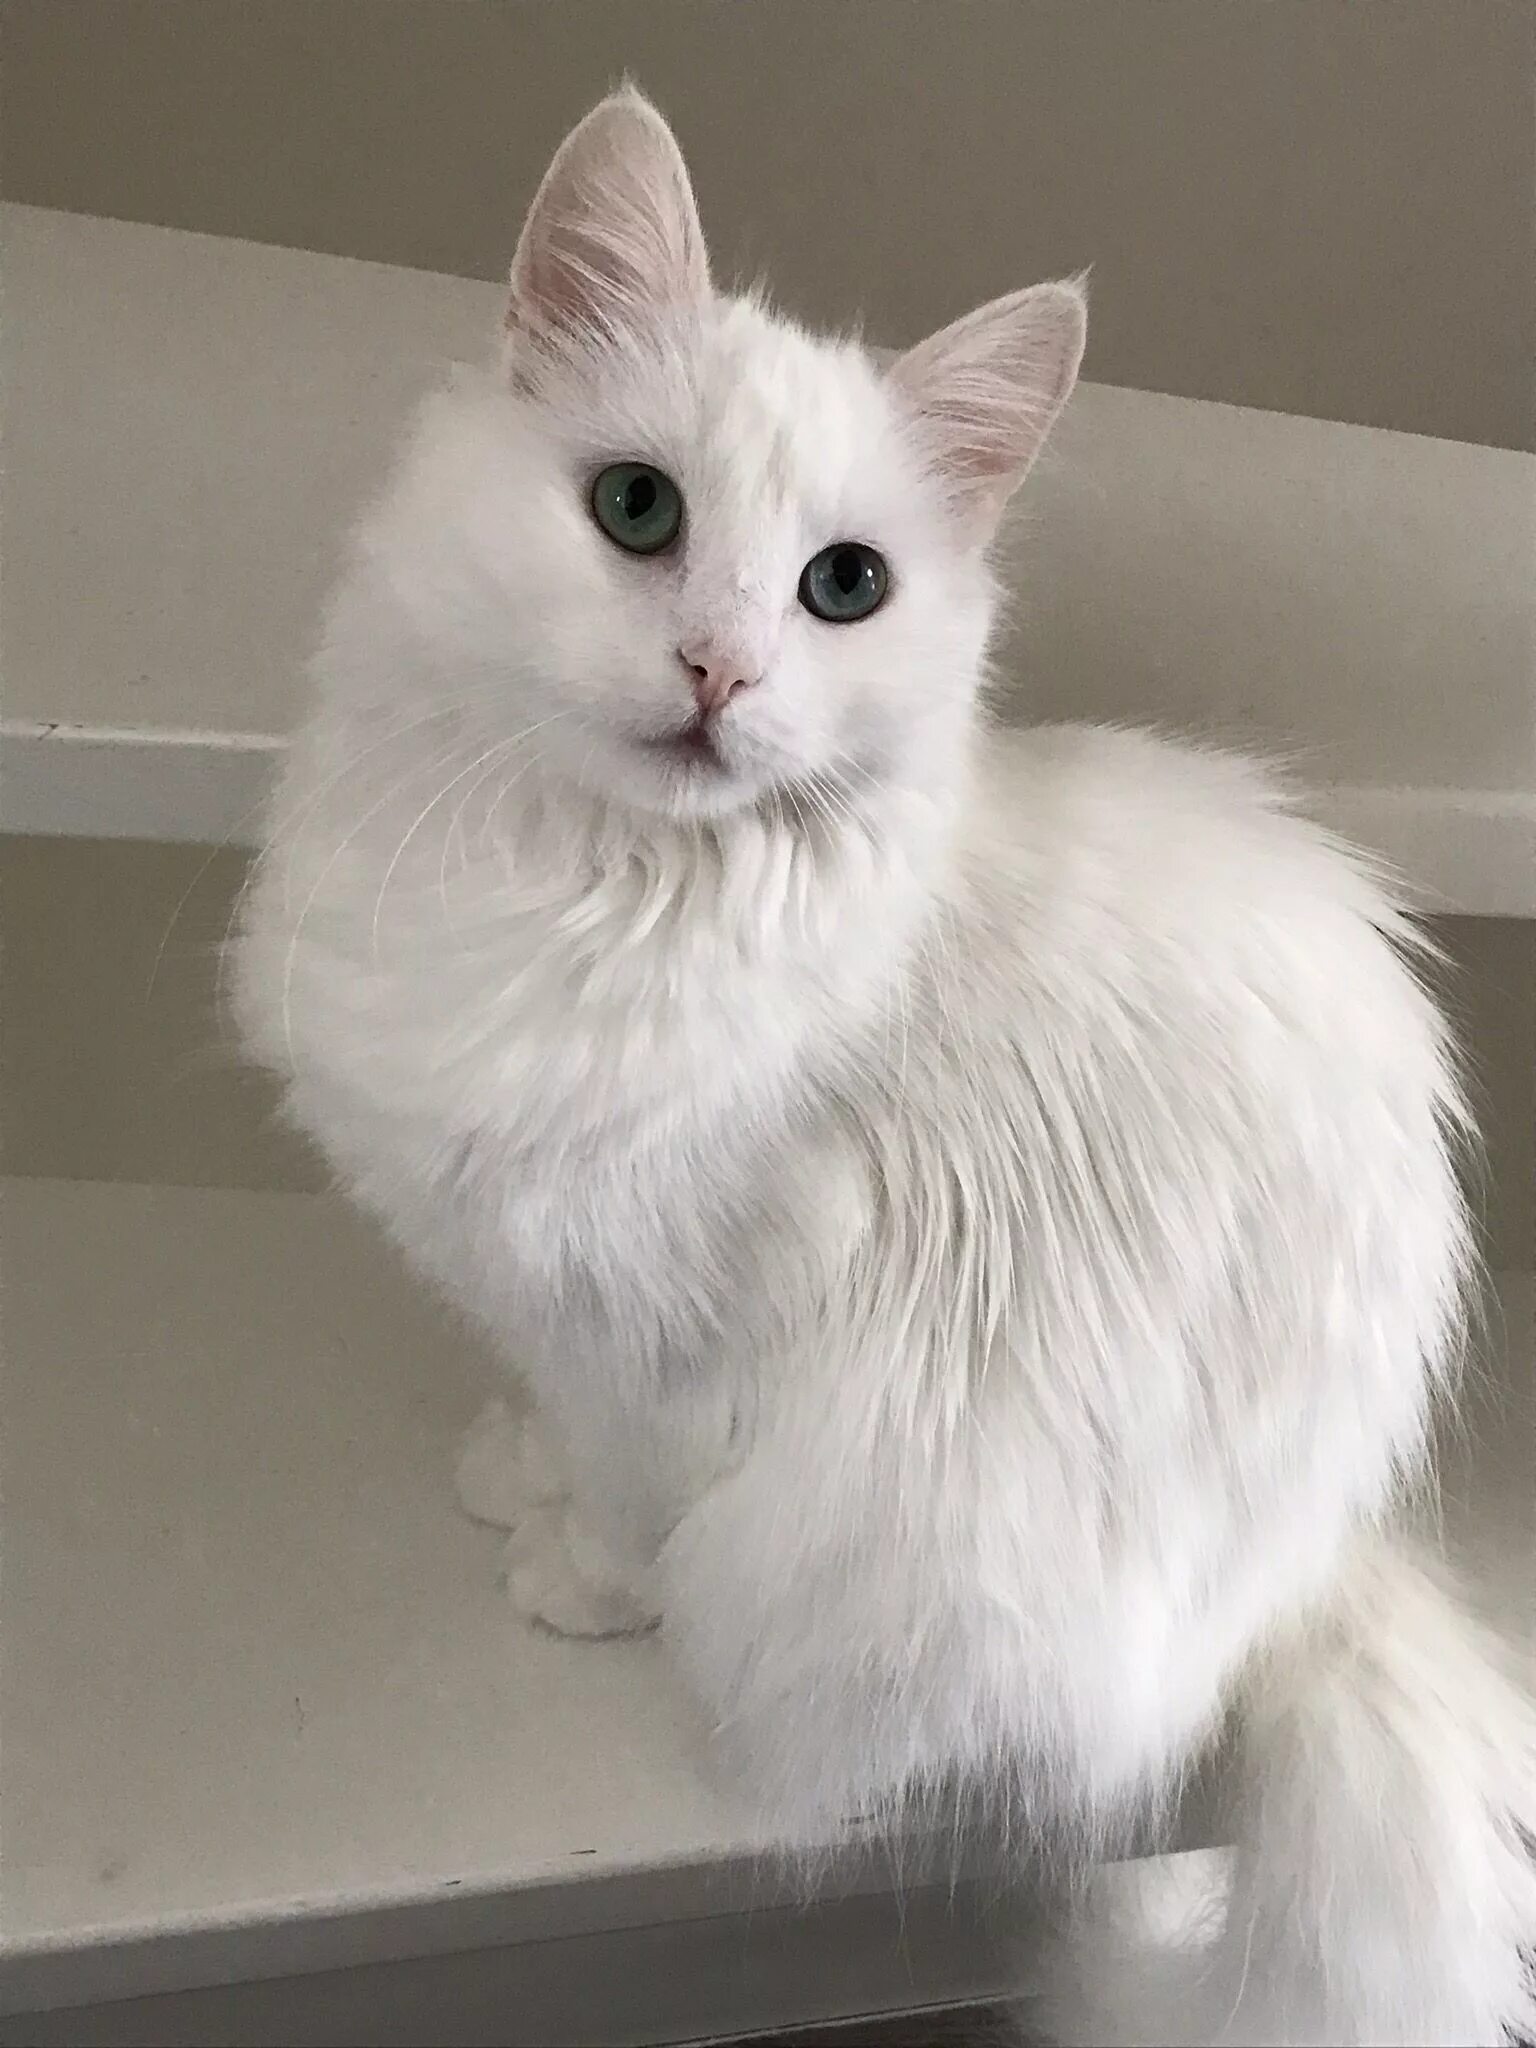 Турецкая ангора кошка. Турецкая ангорская кошка. Турецкий ангорский кот белый. Турецкая ангора белая.